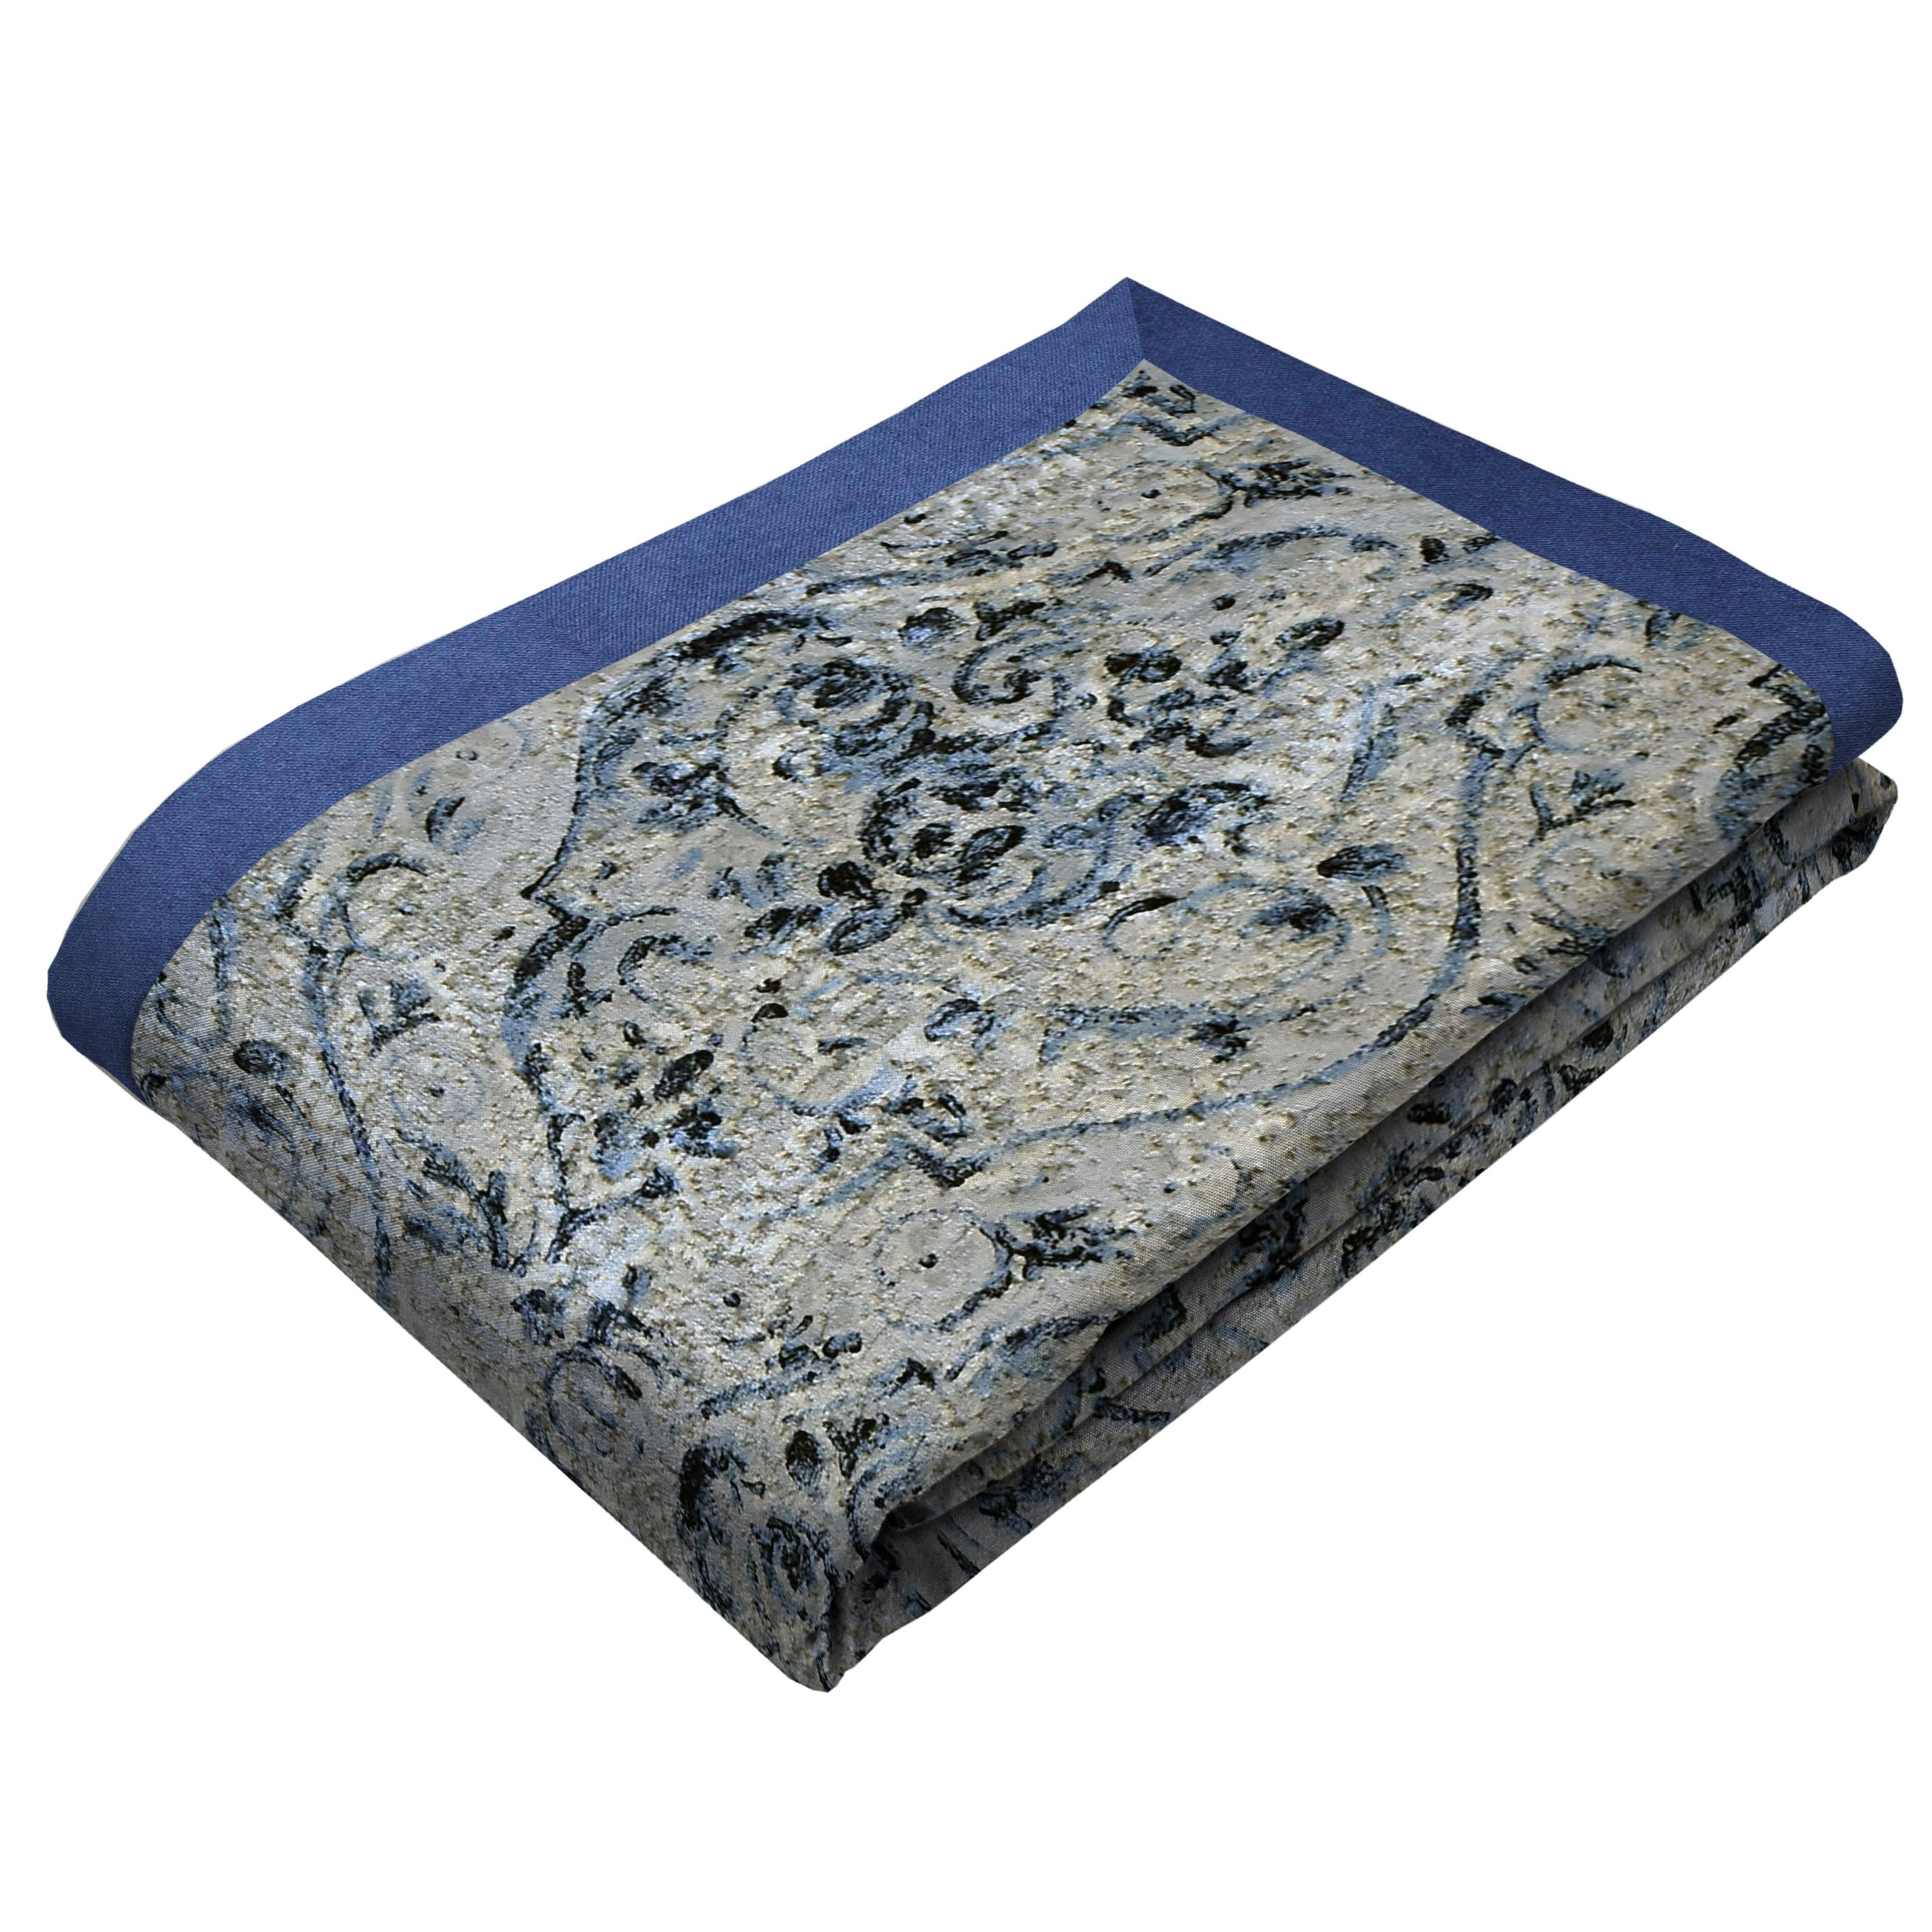 Renaissance Navy Blue Printed Velvet Throws & Runners, Bed Runner (50cm x 220cm)